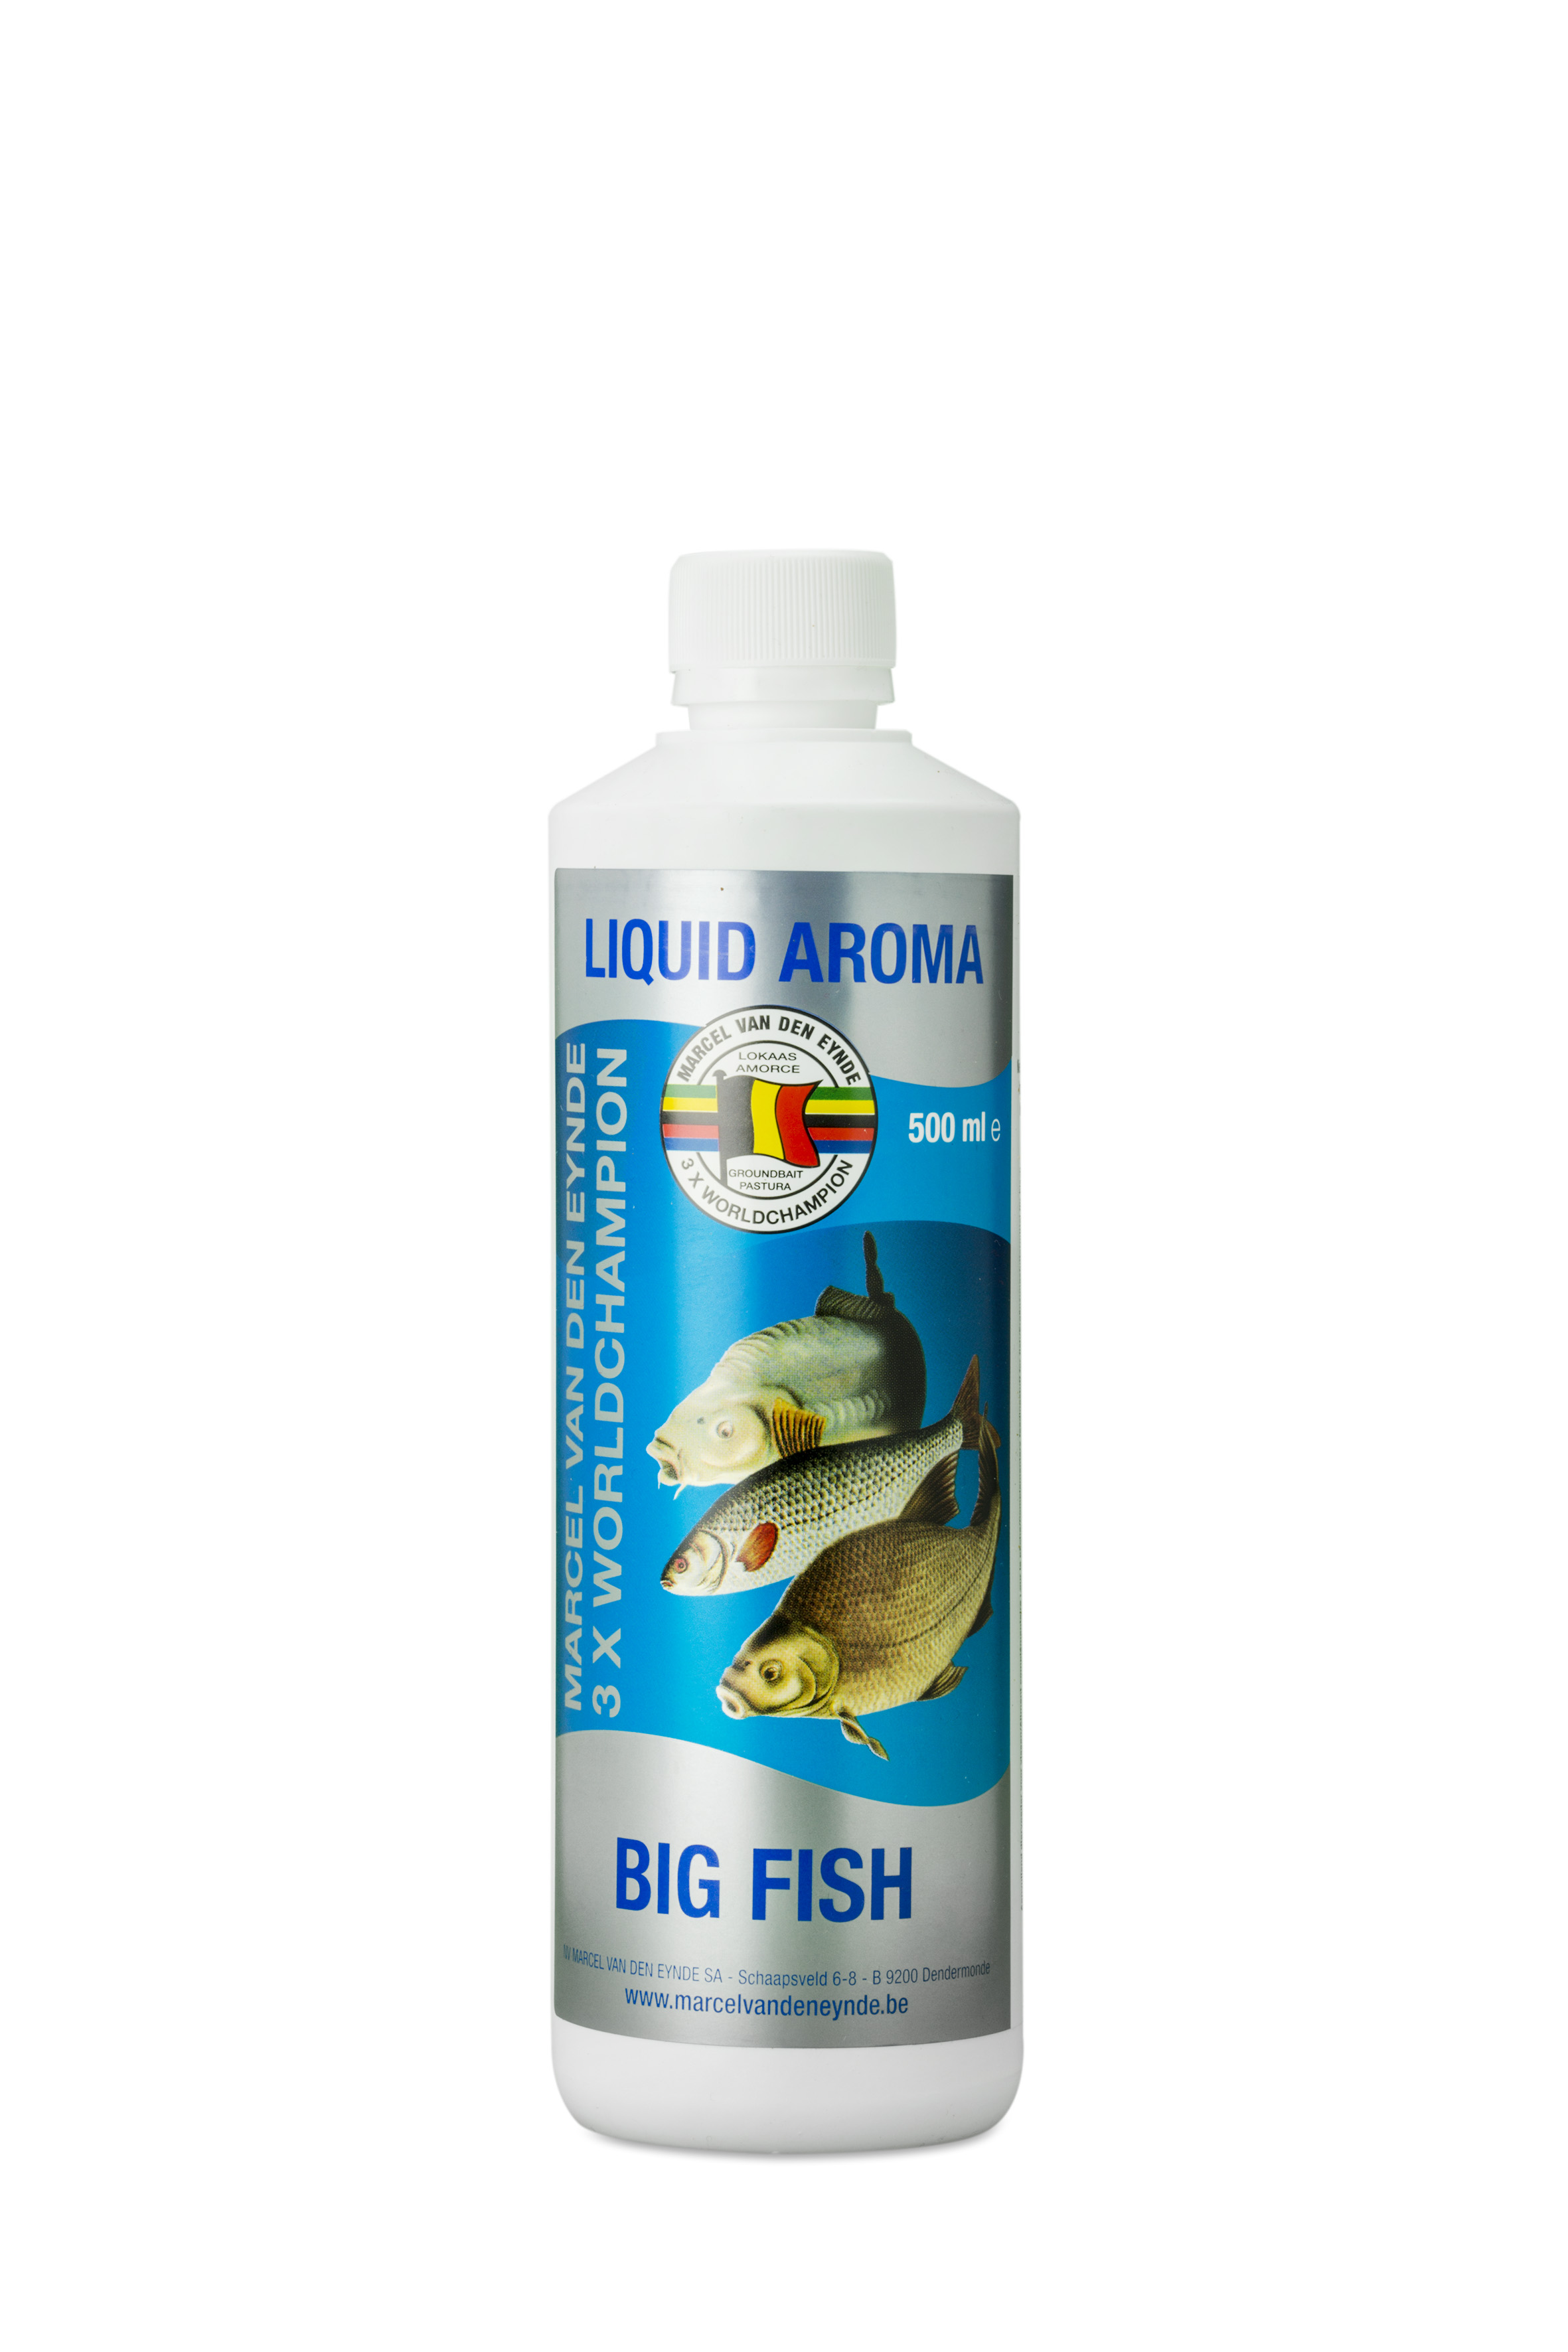 VDE Liquid Aroma Big Fish 500 ml - Tečna aroma Big Fish je prava sveobuhvatna aroma koju možete koristiti u svakom trenutku. Miris našeg tekućeg okusa je intenzivna aroma karamele i može se koristiti tijekom cijele godine. Proizvod se može koristiti na različitim vodama i različitim disciplinama. U mješavini mamaca: prednost tekuće arome je u tome što svoju aromu oslobađa u vodi mnogo brže od arome praha, tako da možete brže privući ribu na mjesto za ribolov. Aroma u prahu treba neko vrijeme da svoju aromu u potpunosti preda mamcu (zbog toga uvijek može proći neko vrijeme prije nego što riba dobije na licu mjesta). Dodajte tečnu aromu u svoju vodu kojom želite da navlažite svoju mješavinu ili dodajte dobru kolicinu svojoj mješavini. Preporučena doza je 50 do 100 ml po kilogramu mamca (bez gline). Čestice i kus-kus: ako koristite mešavinu čestica, možemo vam dati savet da dodate malu količinu tečne arome melase i tečne arome Big Fish, za ekstra moćan efekat. Imajte na umu da je melasa slatka i daje dodatnu ljepljivost. Možete se poigrati koliko jako želite da vaš recept miriše. Za kastere i crve: samo dodajte malu količinu na njih 30 minuta prije ribolova. Cijena: 12.5 BAM